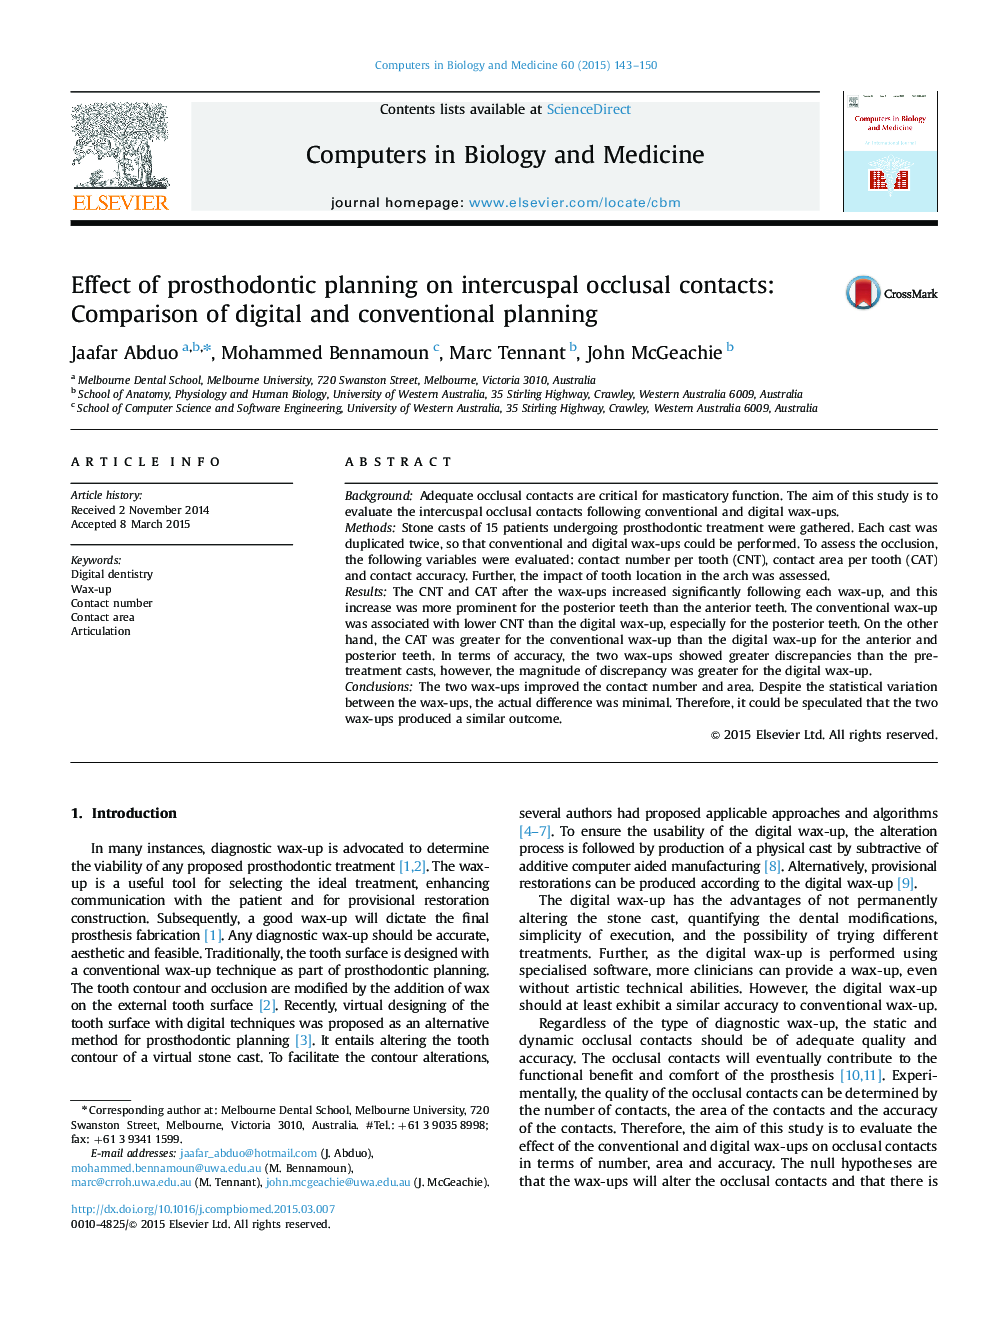 تأثیر برنامه ریزی پروتز دندانی بر تماس های اکلوزالی intercuspal: مقایسه برنامه های دیجیتال و متعارف